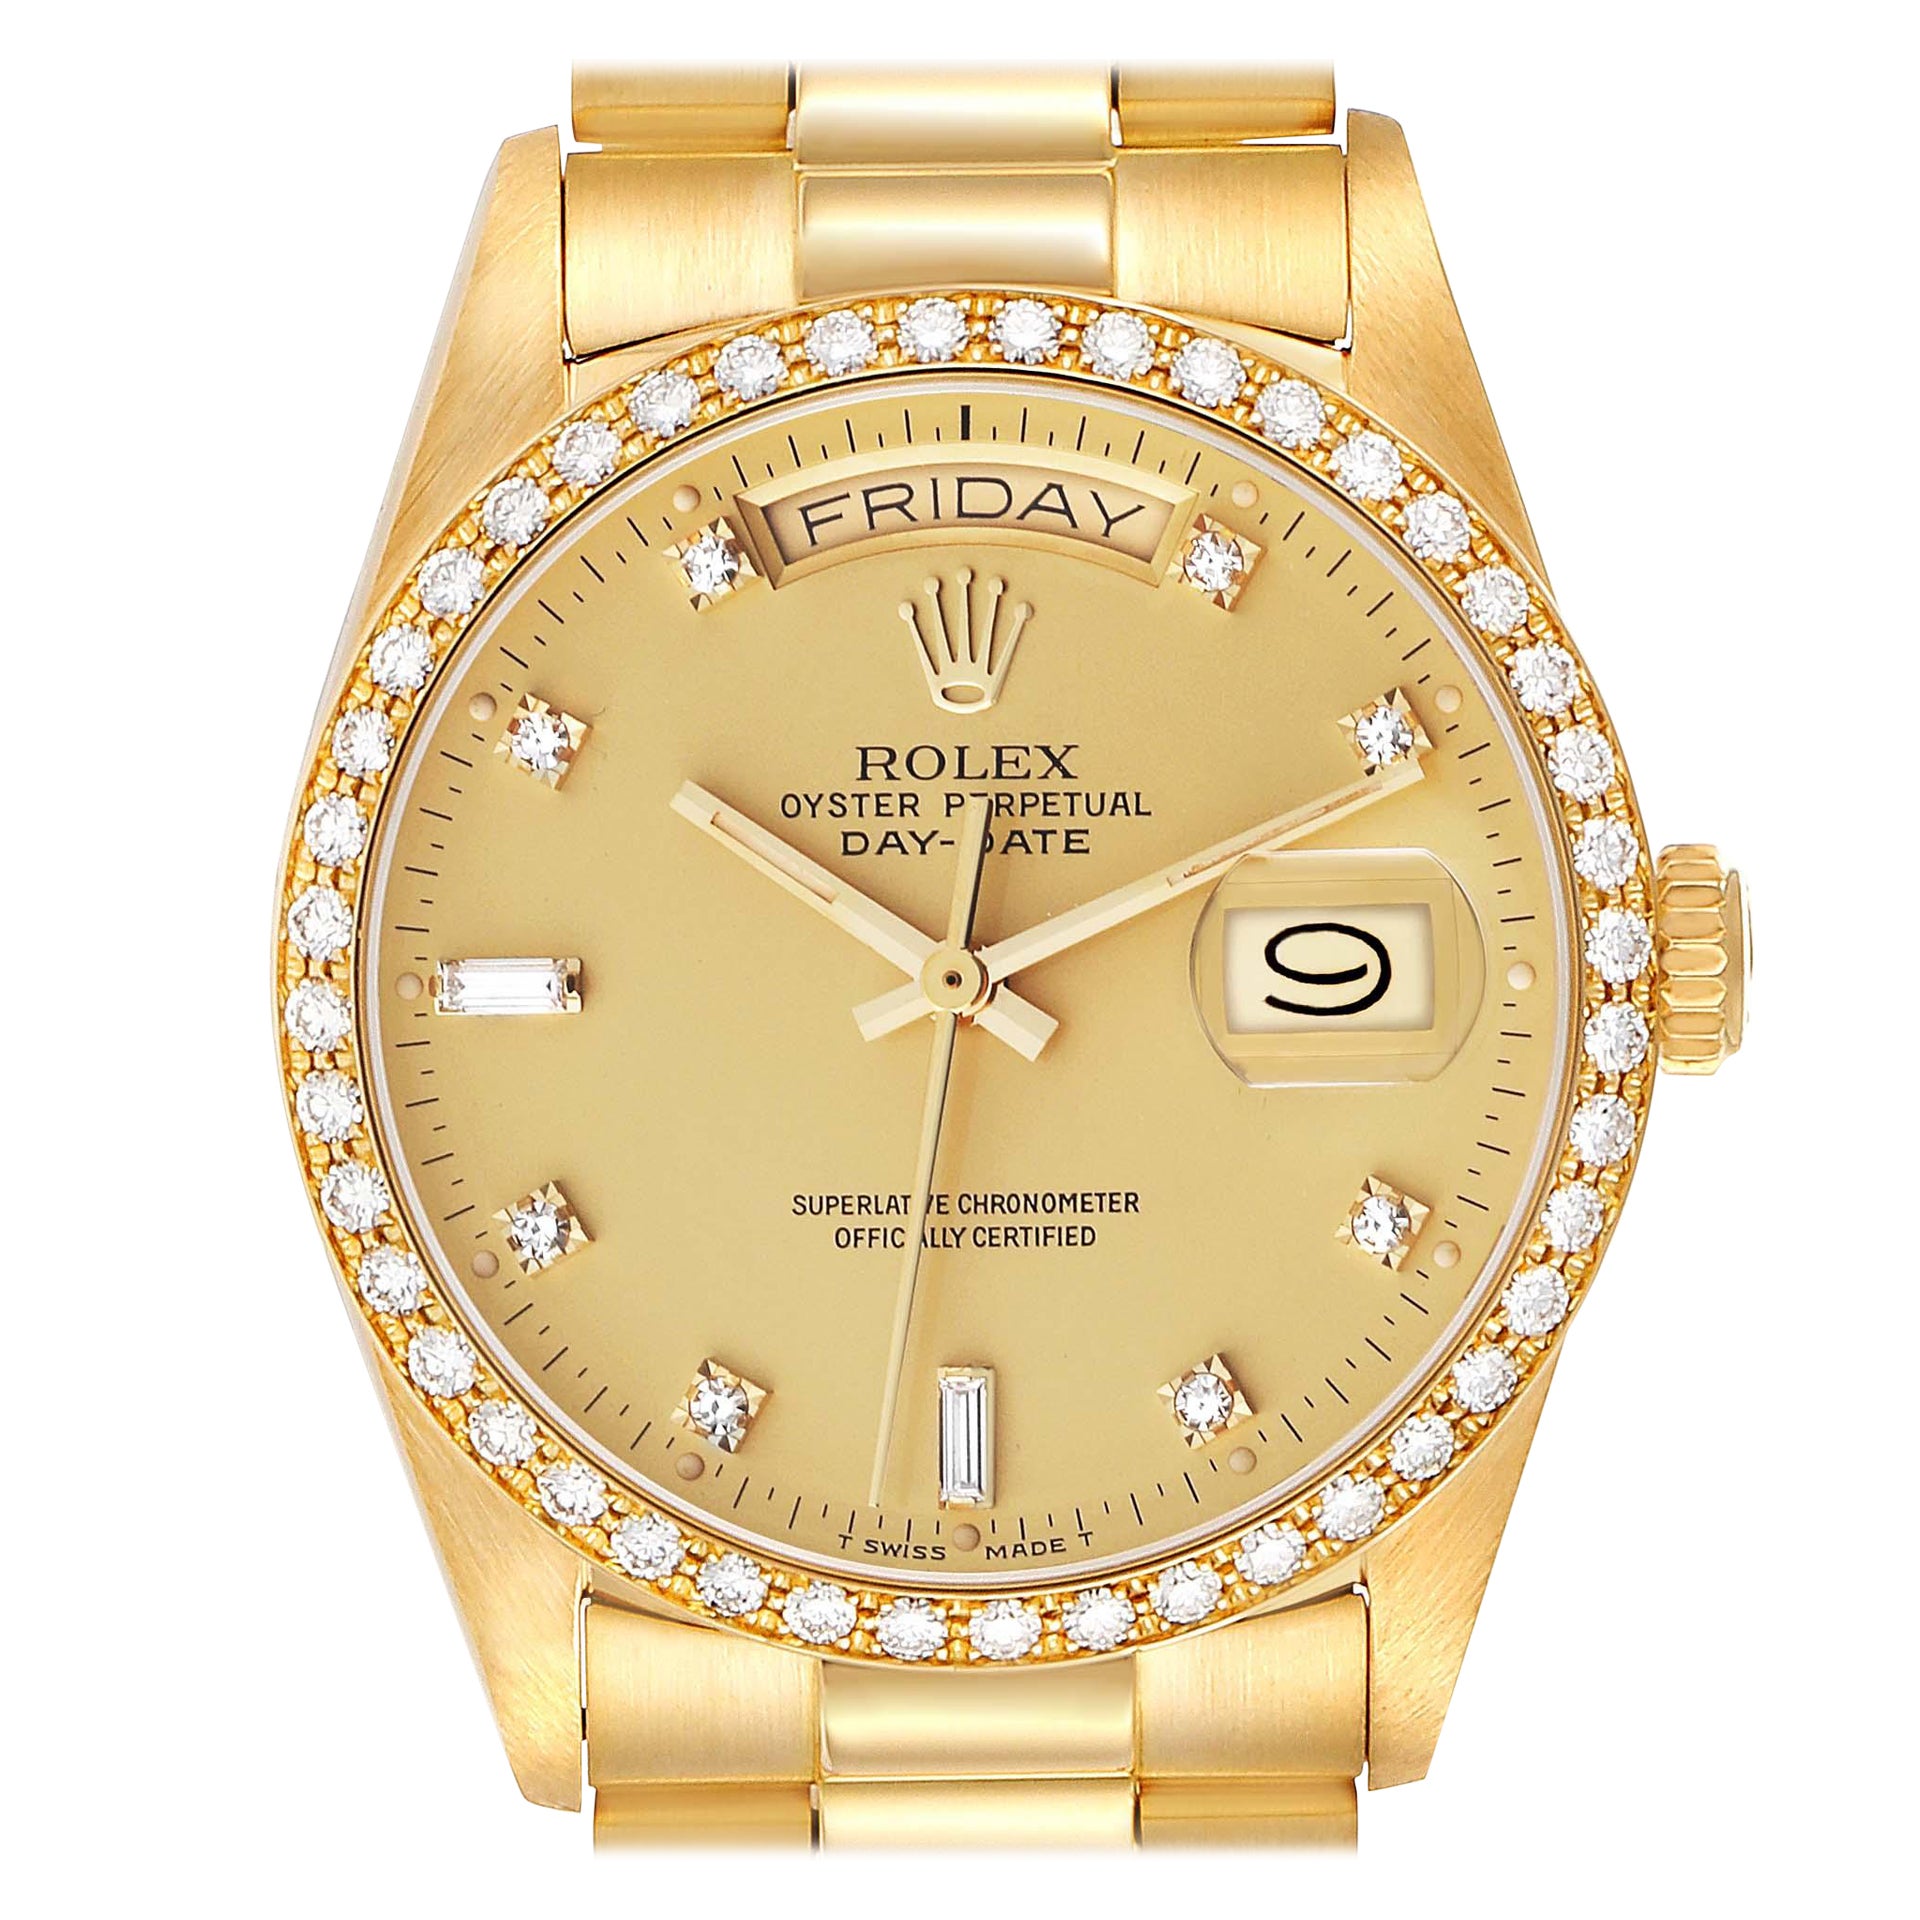 Rolex President Day-Date Yellow Gold Diamond Bezel Mens Watch 18048